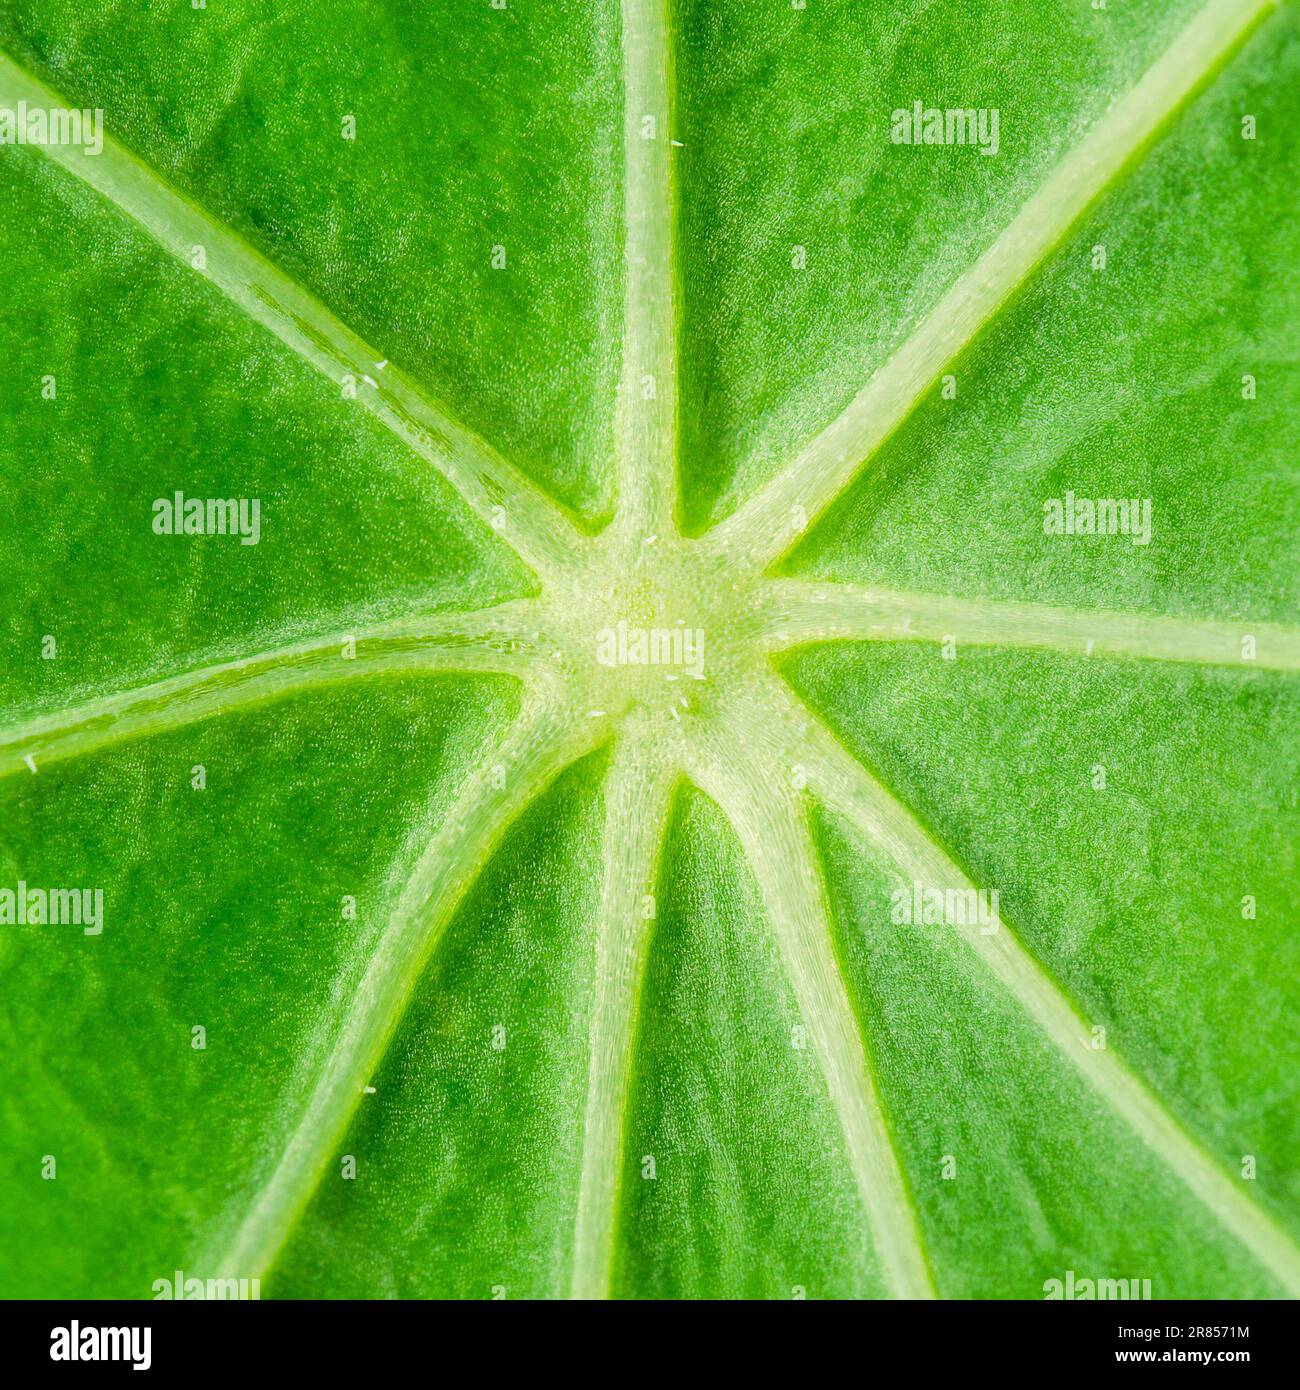 Centro della foglia di nasturzio da giardino di intenso colore verde clorofilla, con spesse vene fogliari a forma di stella, cellule fogliari e pori. Foto Stock